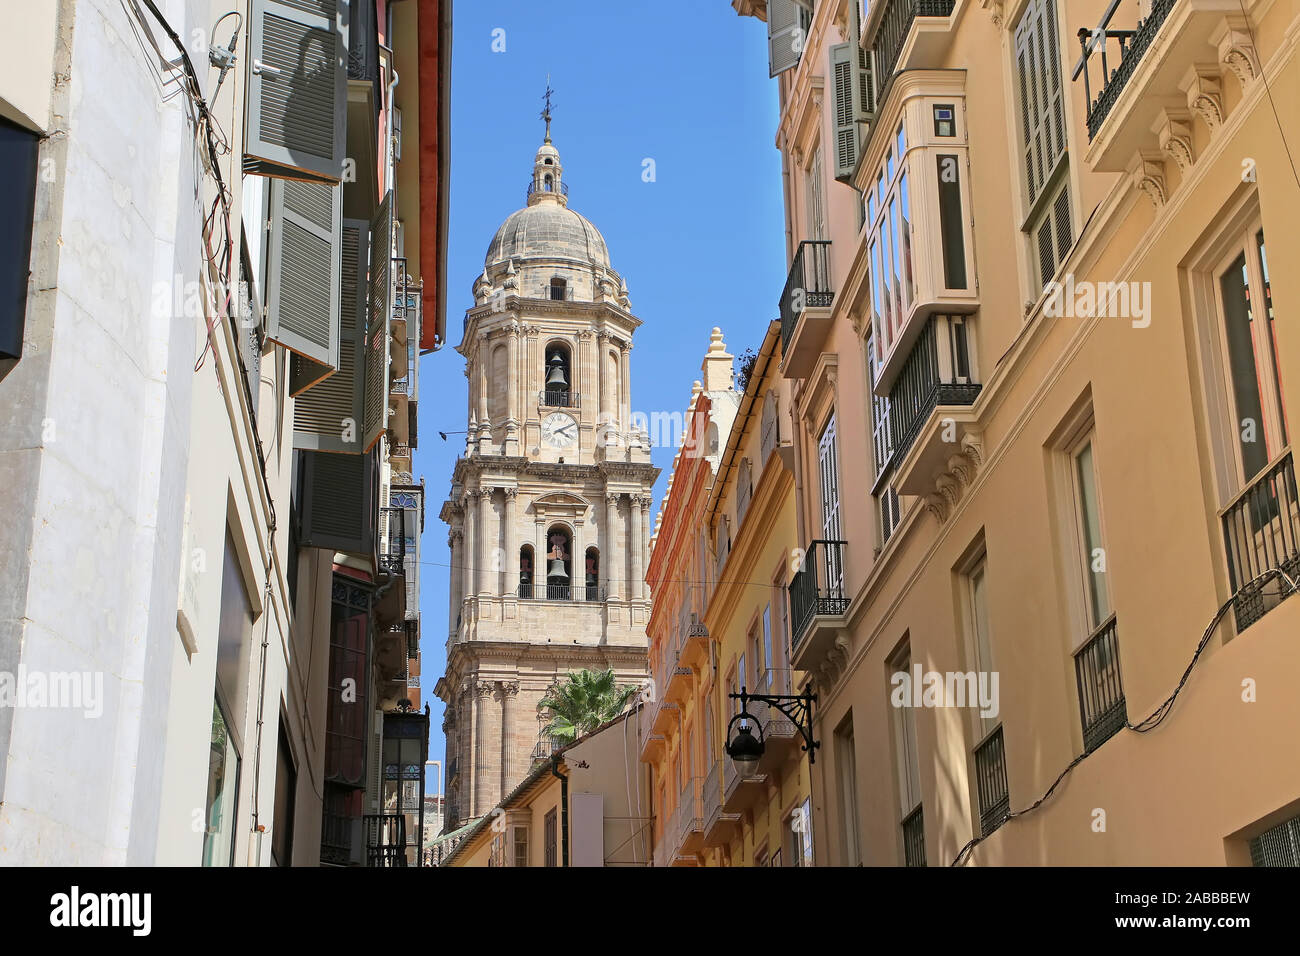 En regardant vers la cathédrale à travers les rues étroites de la ville, dans le centre-ville, Malaga, Andalousie, Espagne du Sud. Banque D'Images